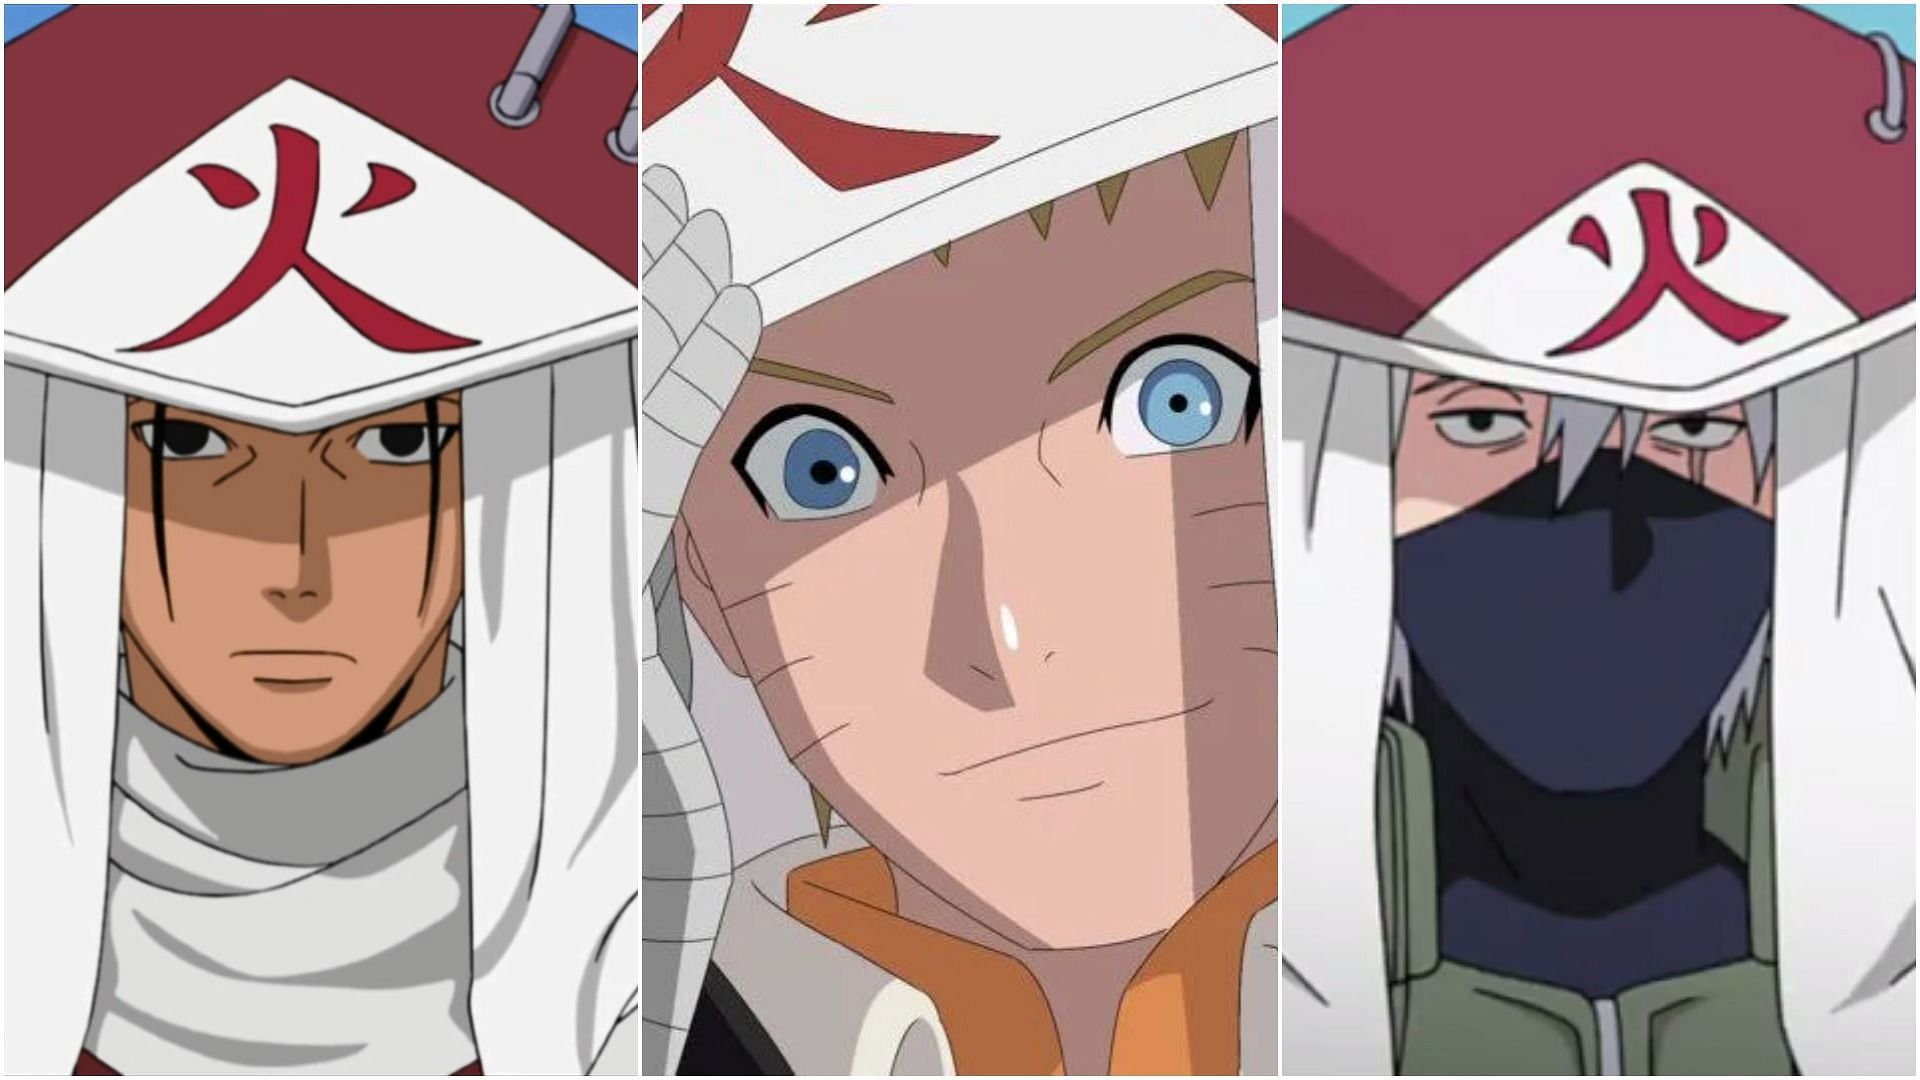 Hiruzen, Naruto, and Kakashi as seen in the series (Image via Sportskeeda)